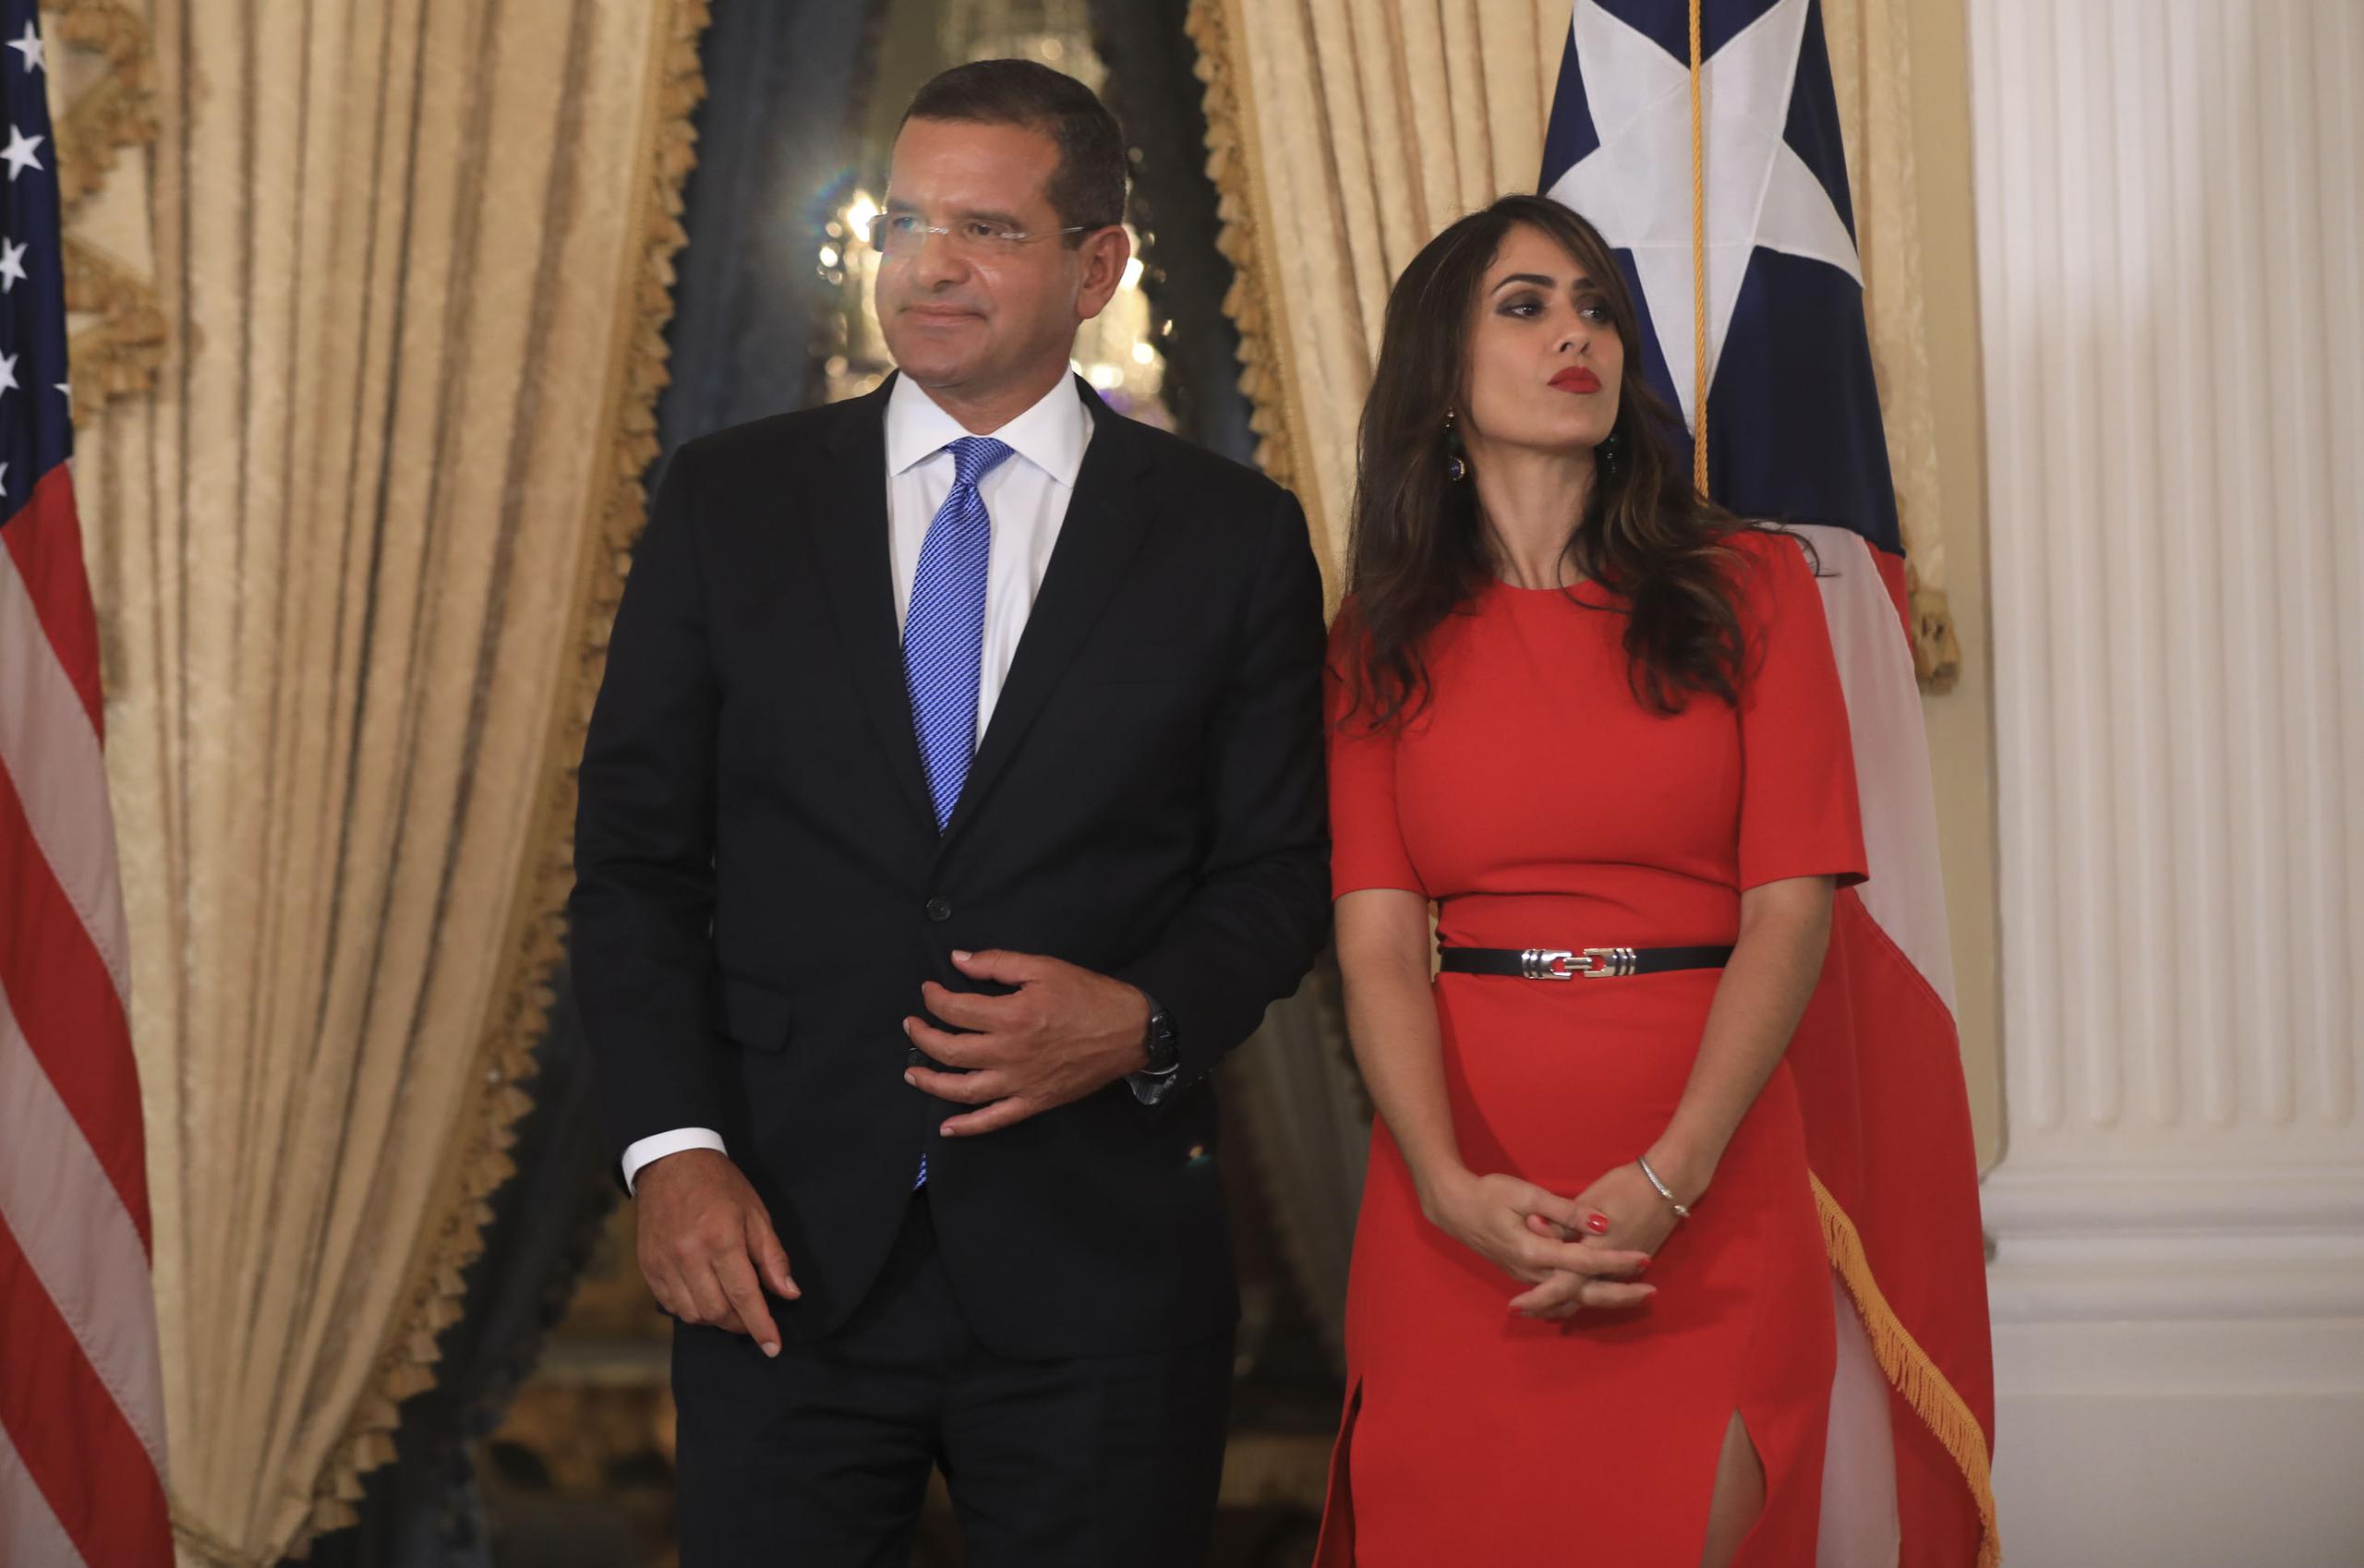 El gobernador Pedro Pierluisi y la delegada congresional Elizabeth Torres durante la juramentación al cargo el 1 de julio de 2021 en La Fortaleza.